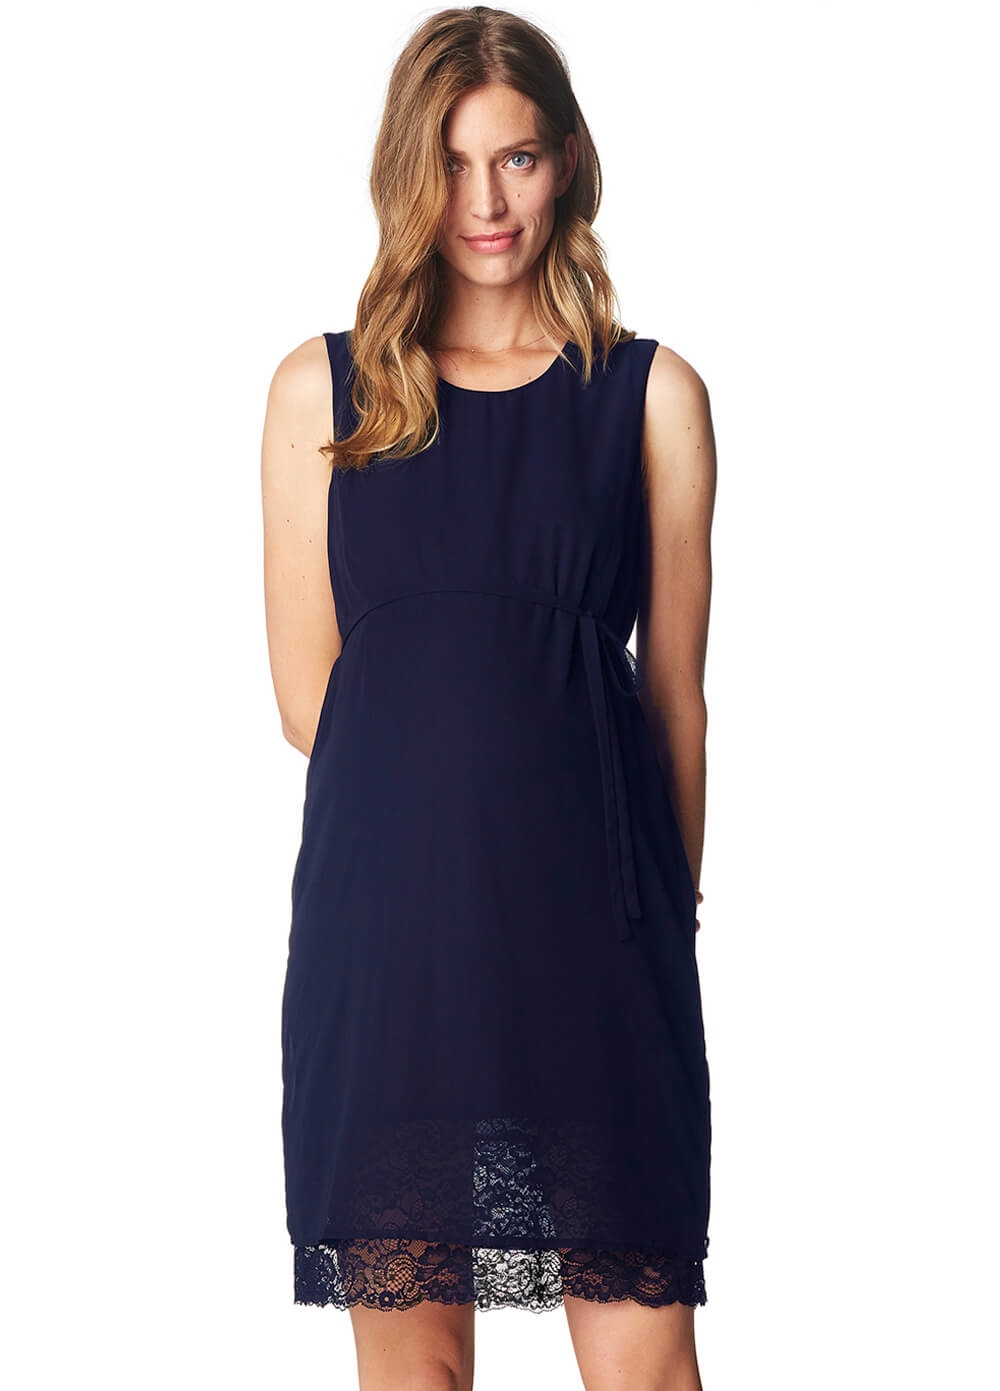 Esprit - Lace Hem Chiffon Dress in Night Blue